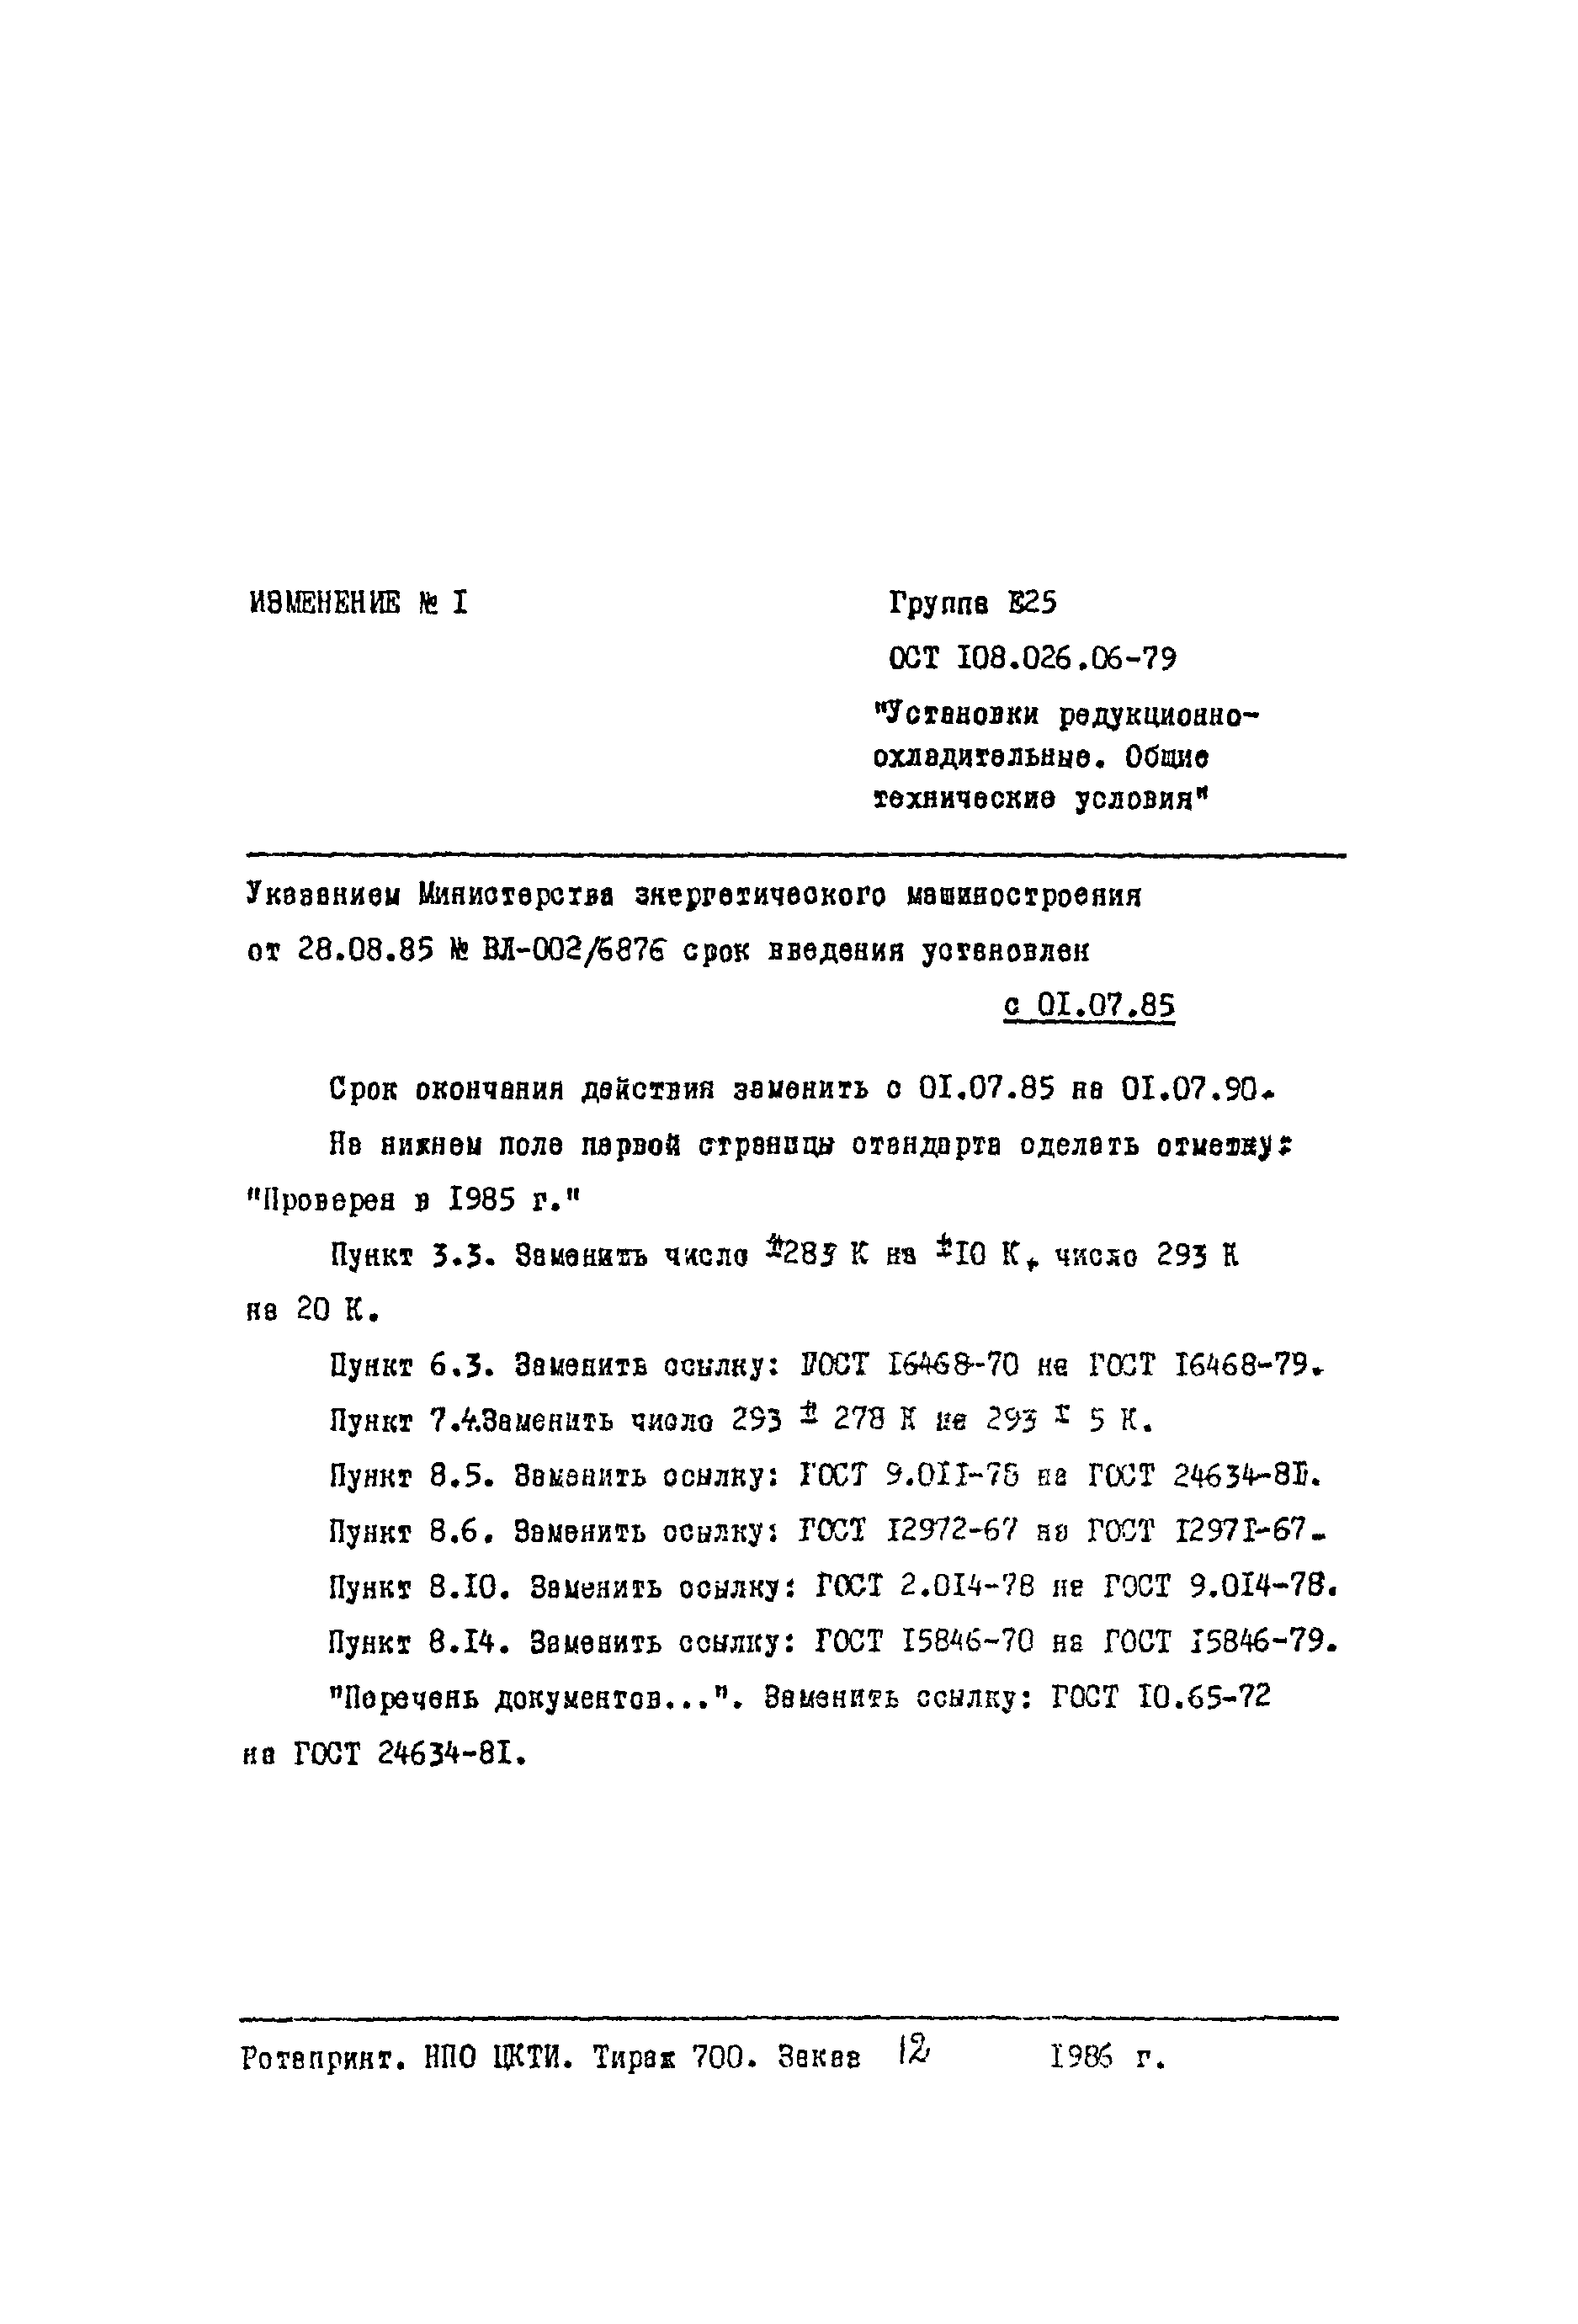 ОСТ 108.026.06-79